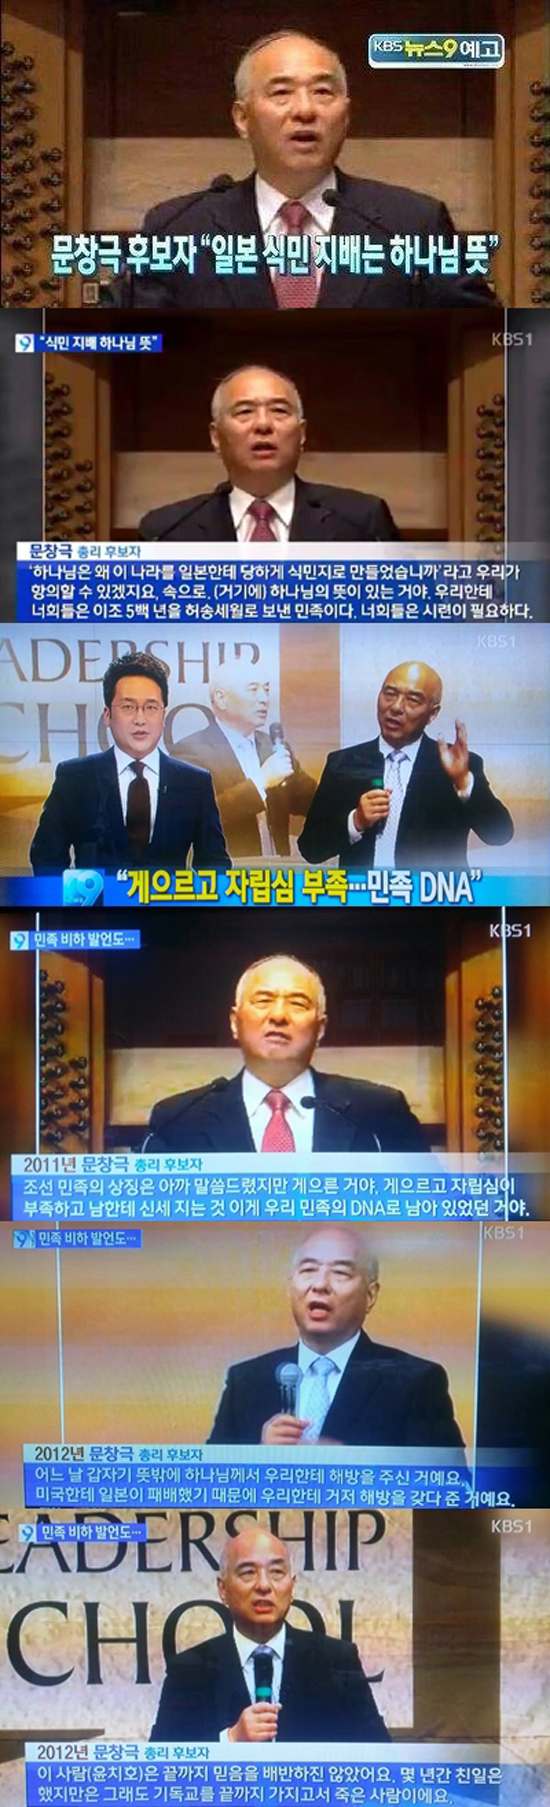 문창극 총리 후보자의 망언을 보도한 11일 KBS 9시뉴스 화면.